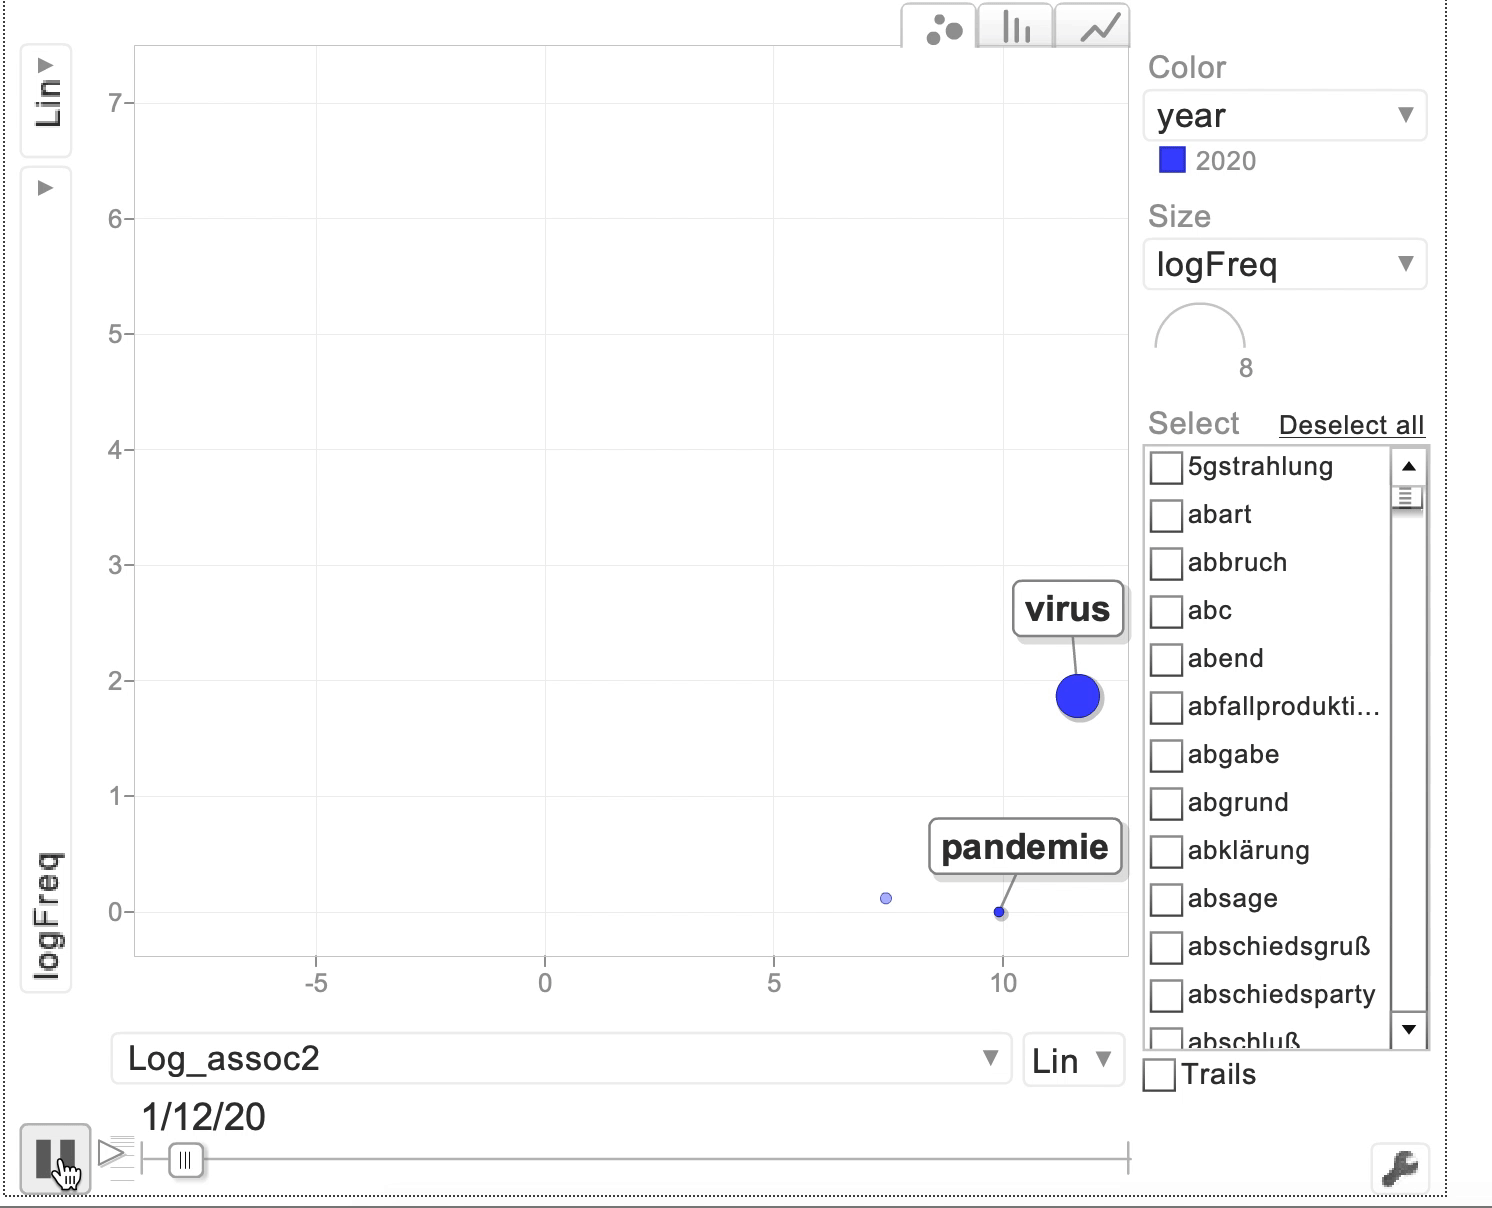 GoogleVis Motion Chart mit Frequenzen der Bestimmungsglieder, die im Coronakorpus mit dem Erstglied Corona- auftreten.